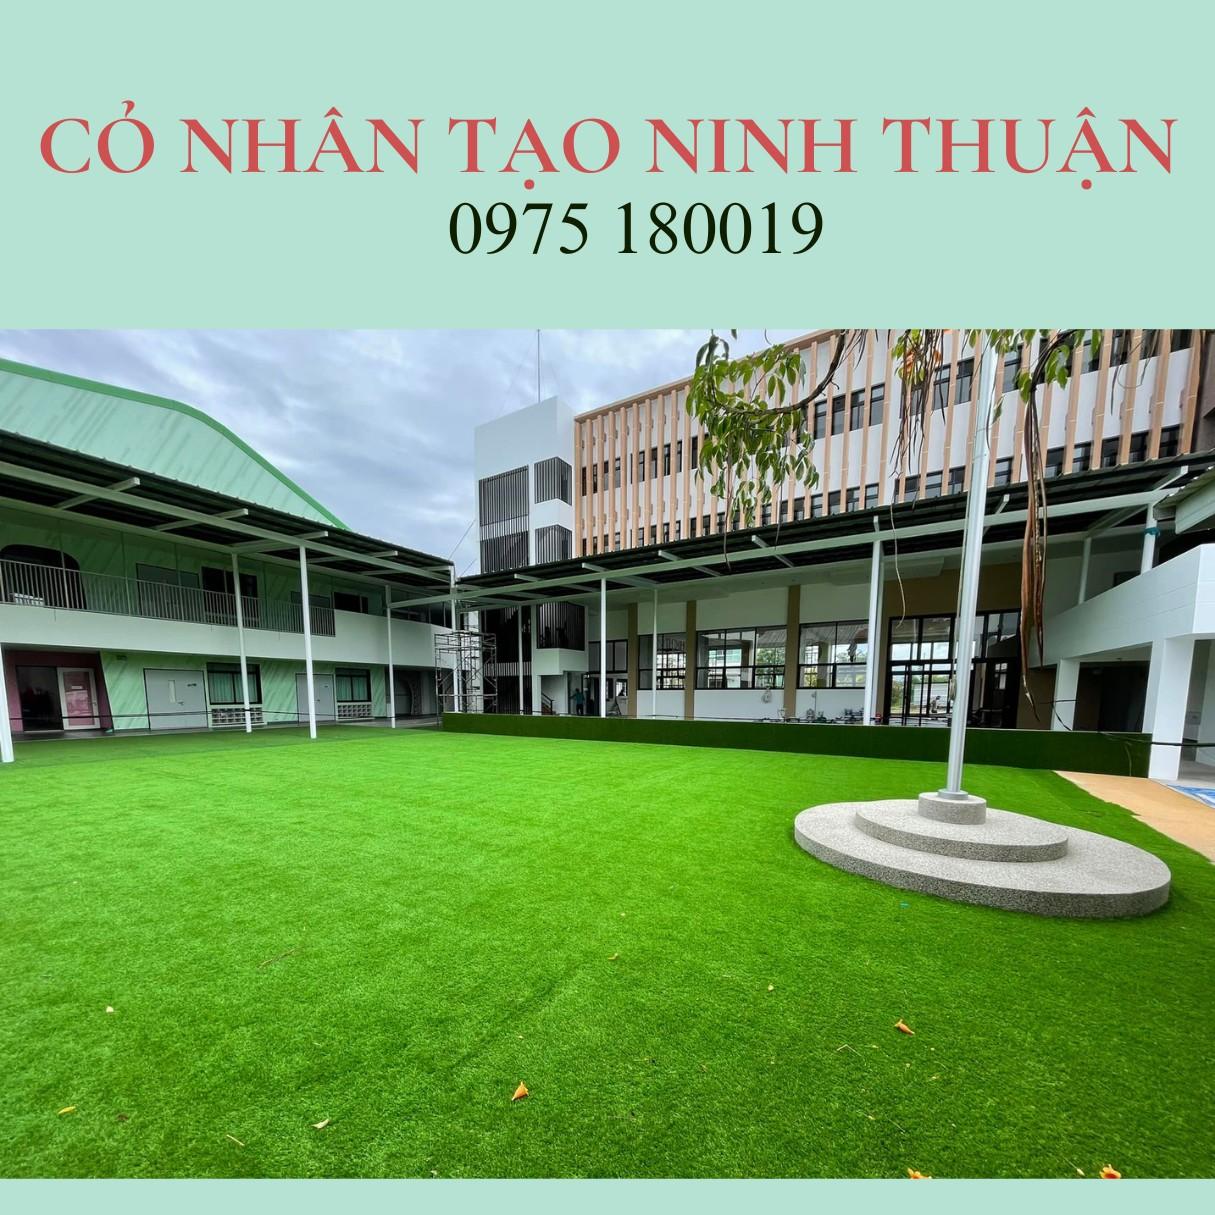 Cỏ nhân tạo Ninh Thuận